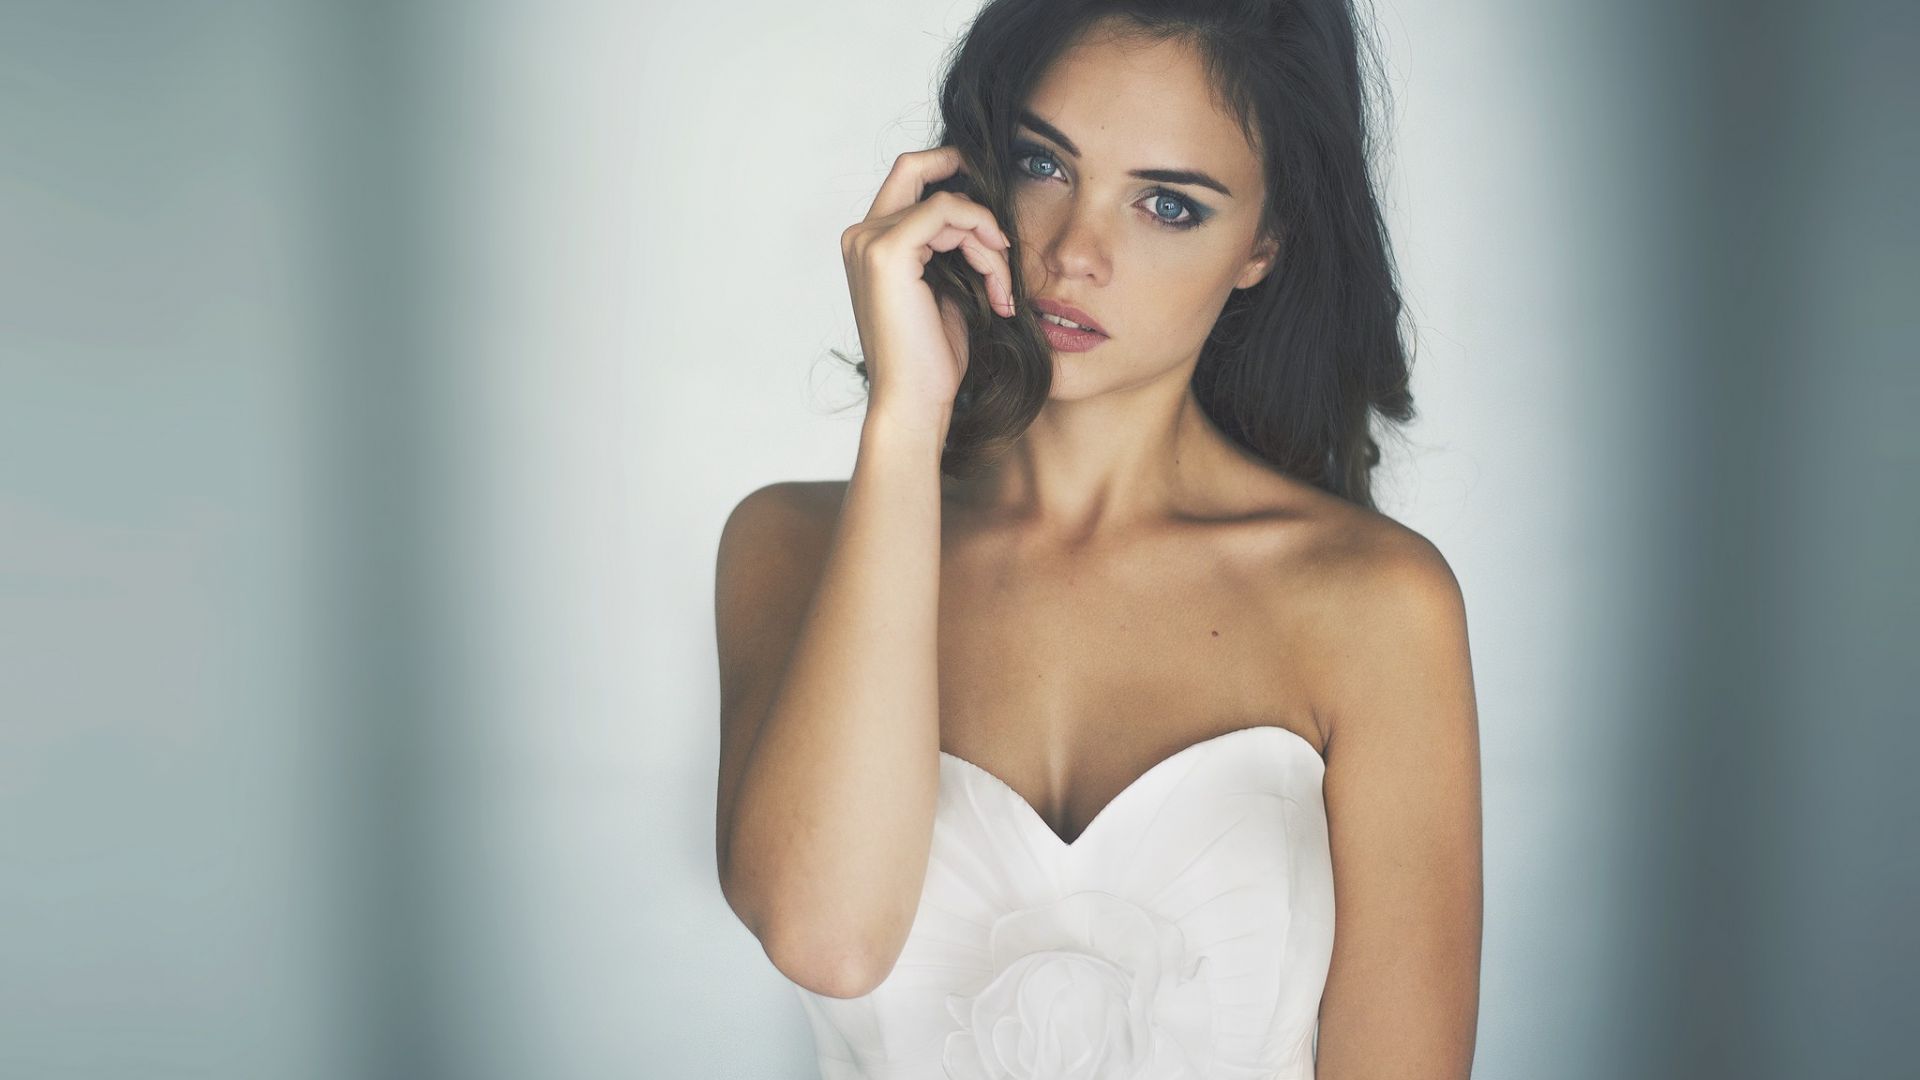 Wallpaper Brunette model in white dress